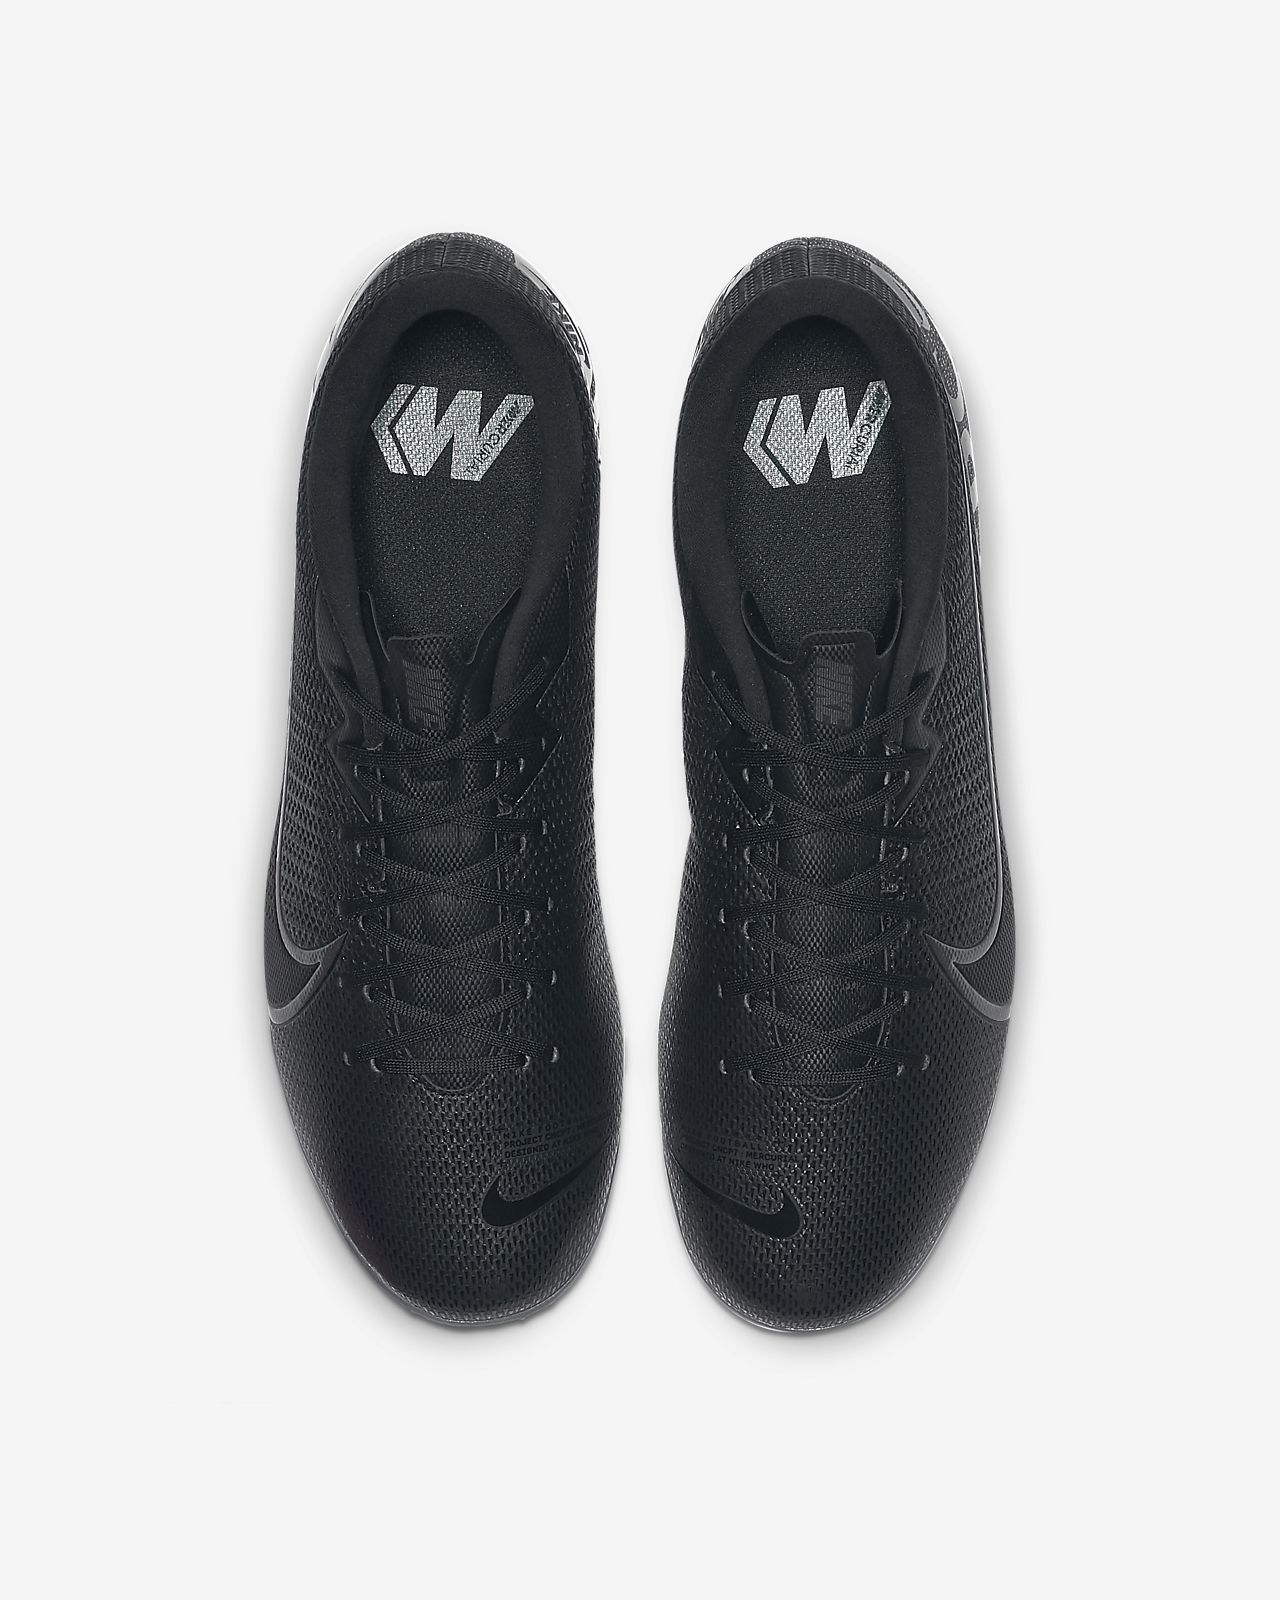 Nike Mercurial Vapor Shoes Australia Soccer Pinterest